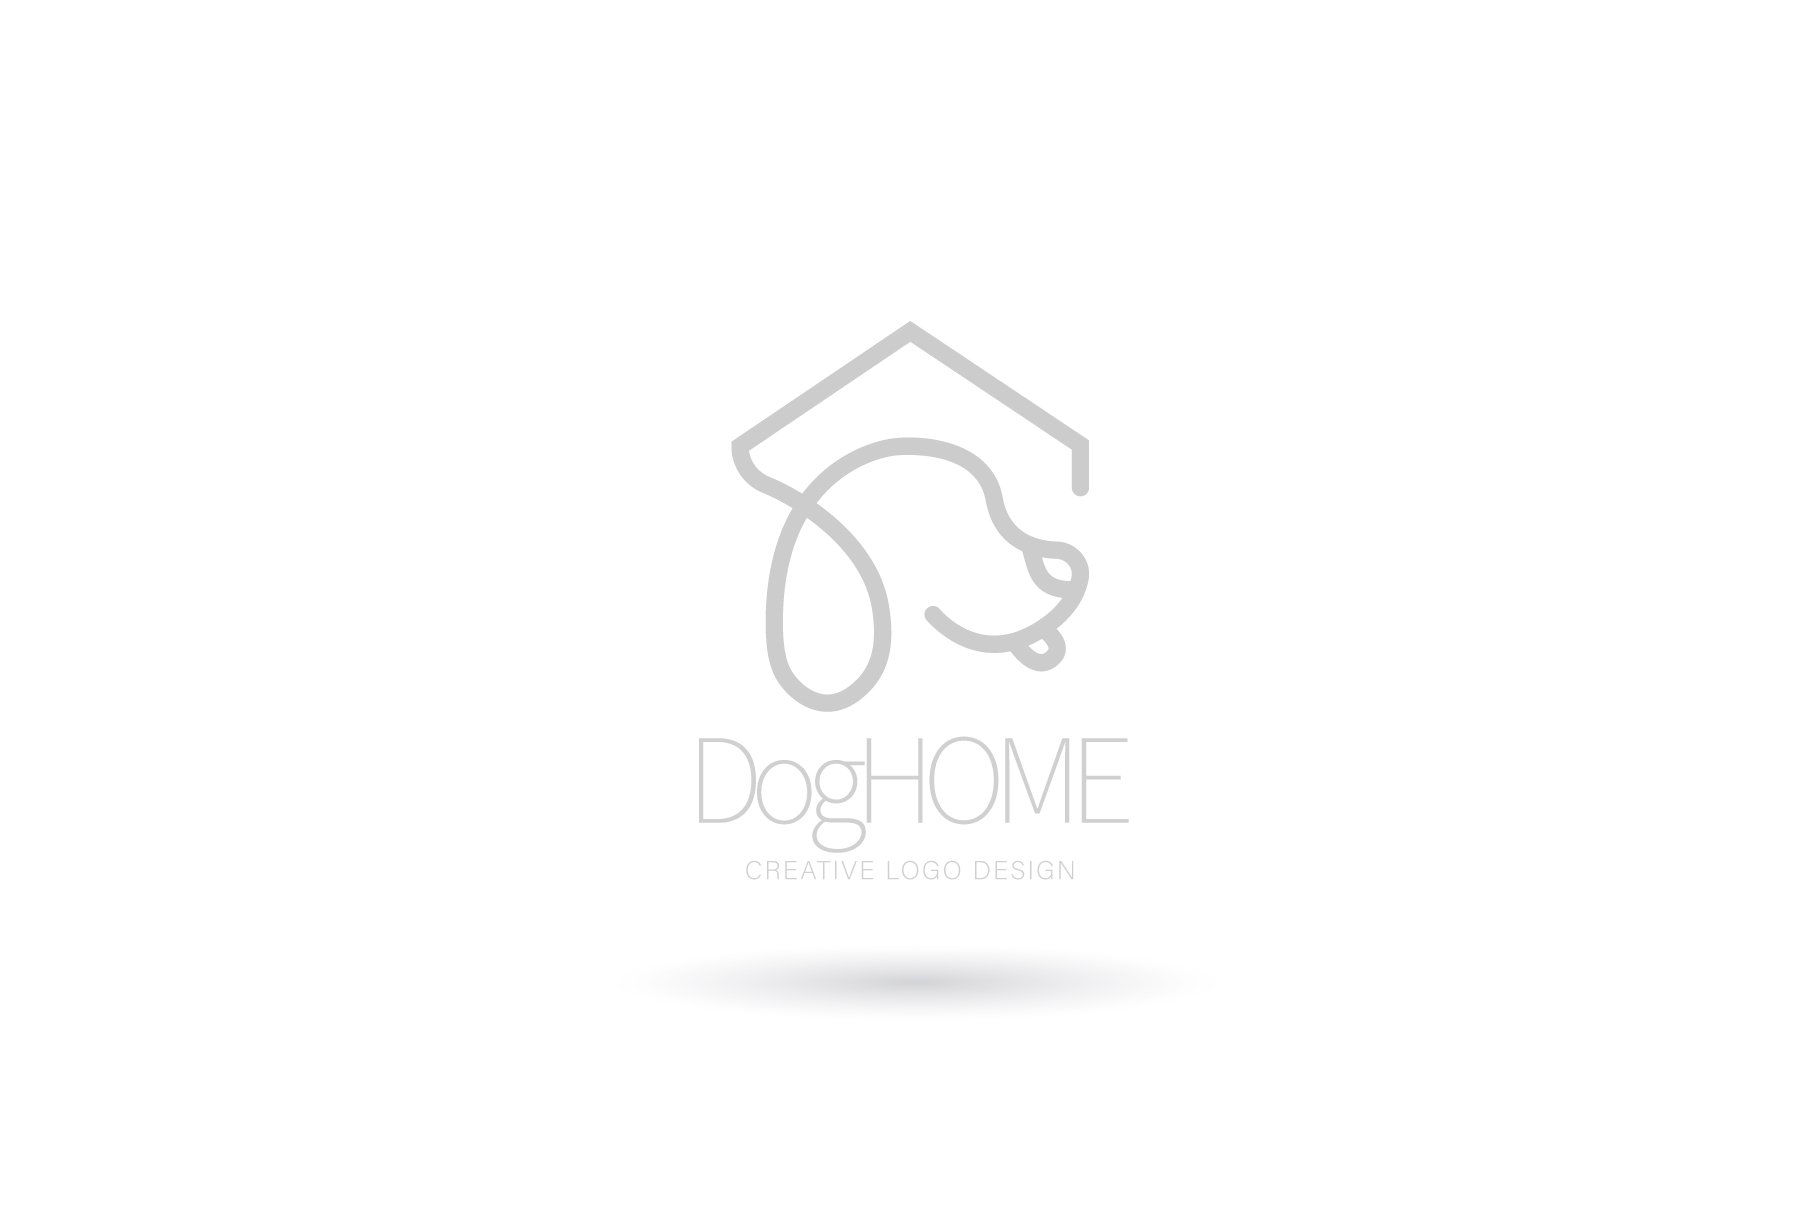 Dog home logo, Pet house logo preview image.